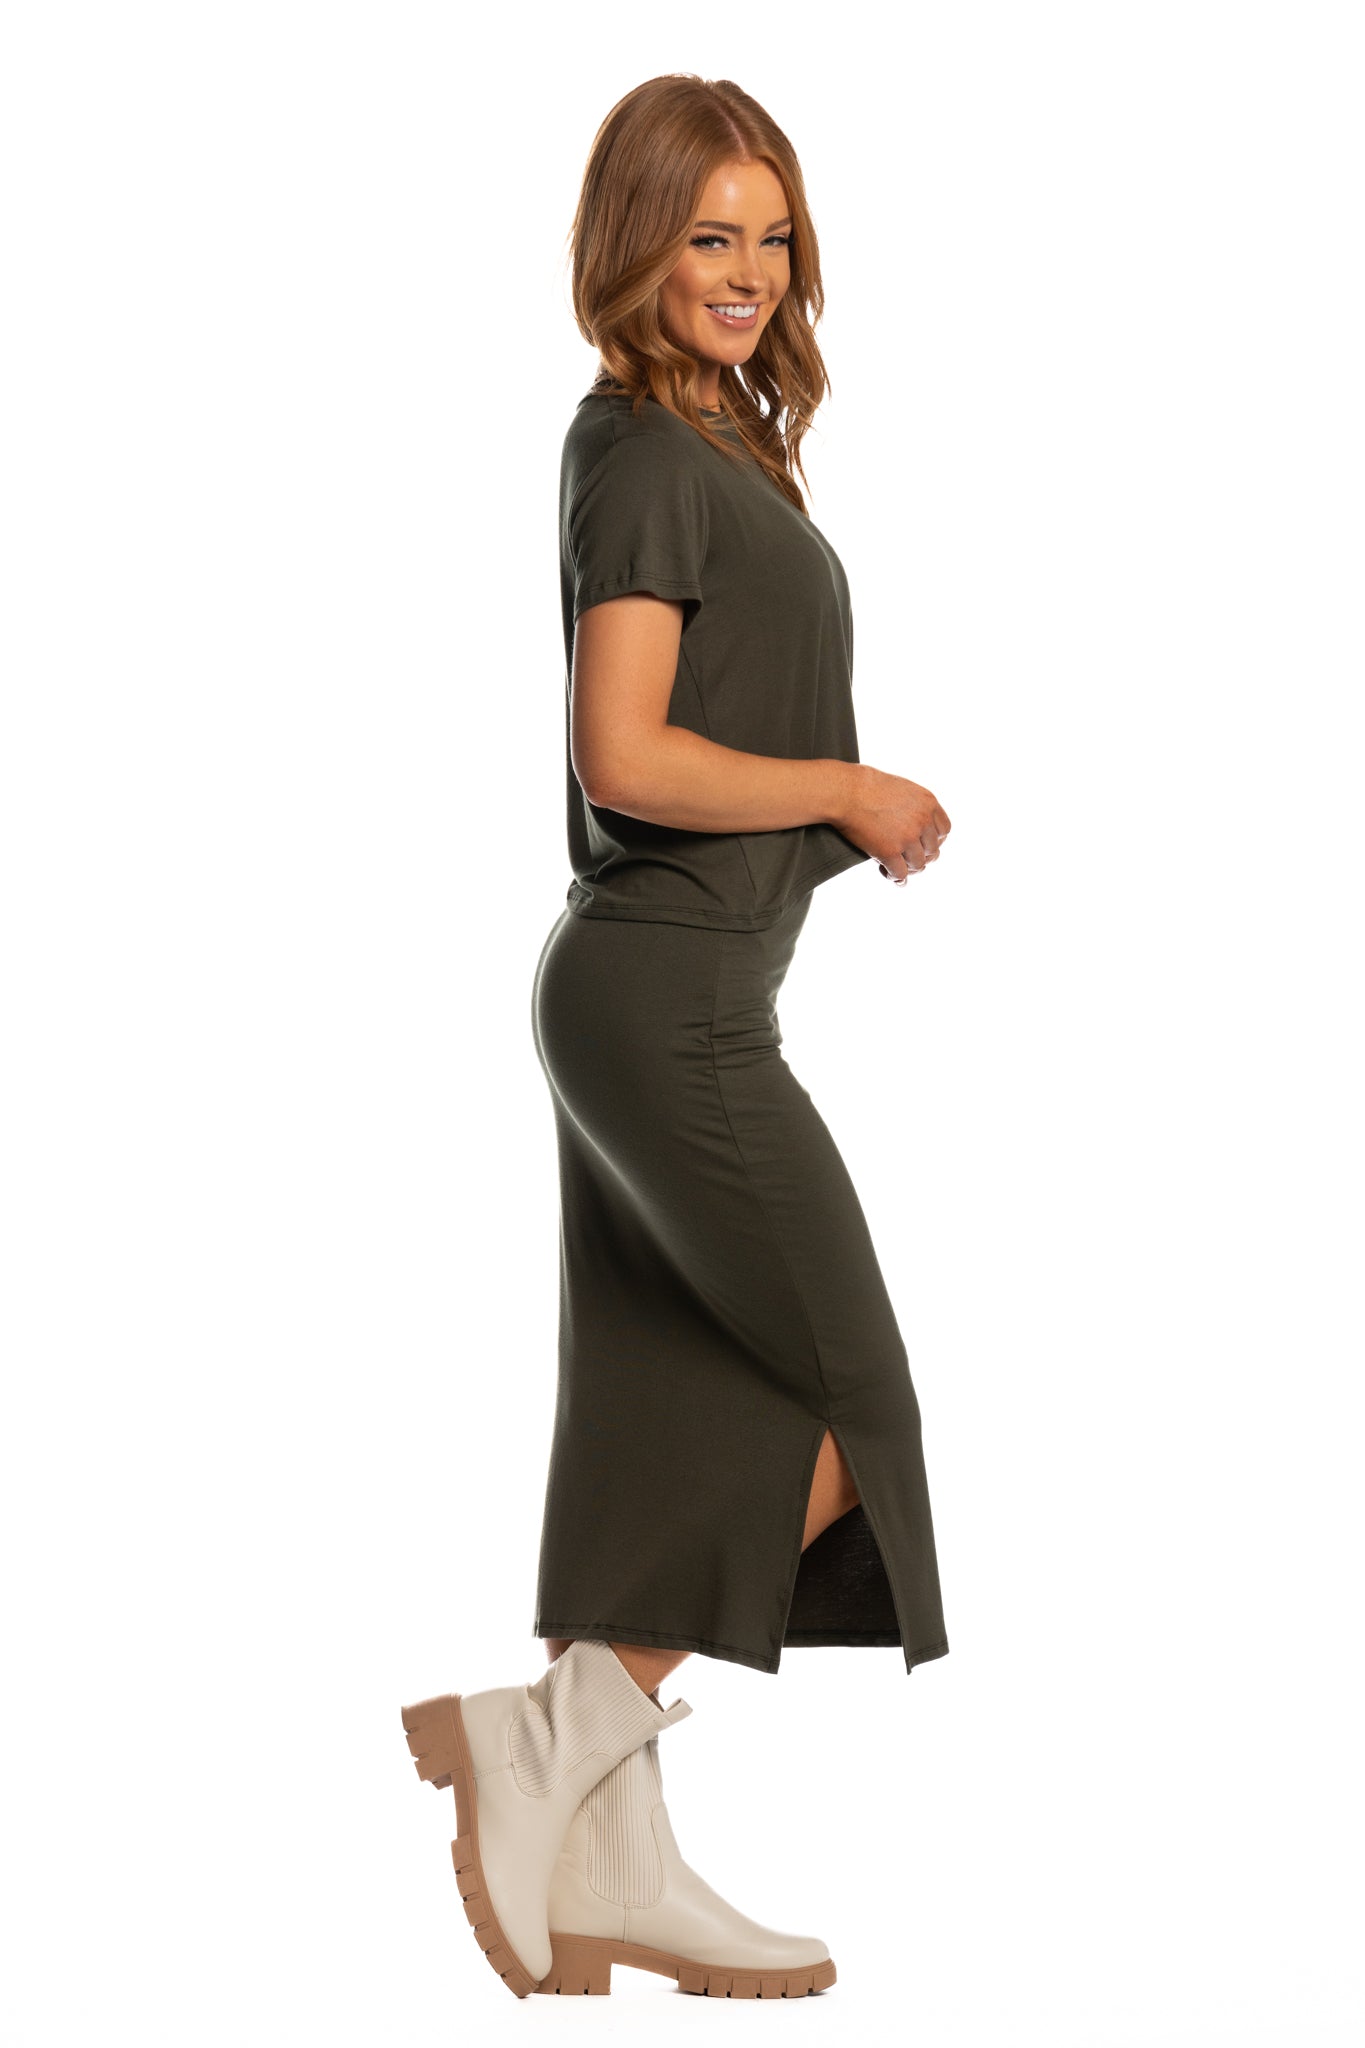 Brigitte Brianna Motion Tee & Runaround Skirt Set